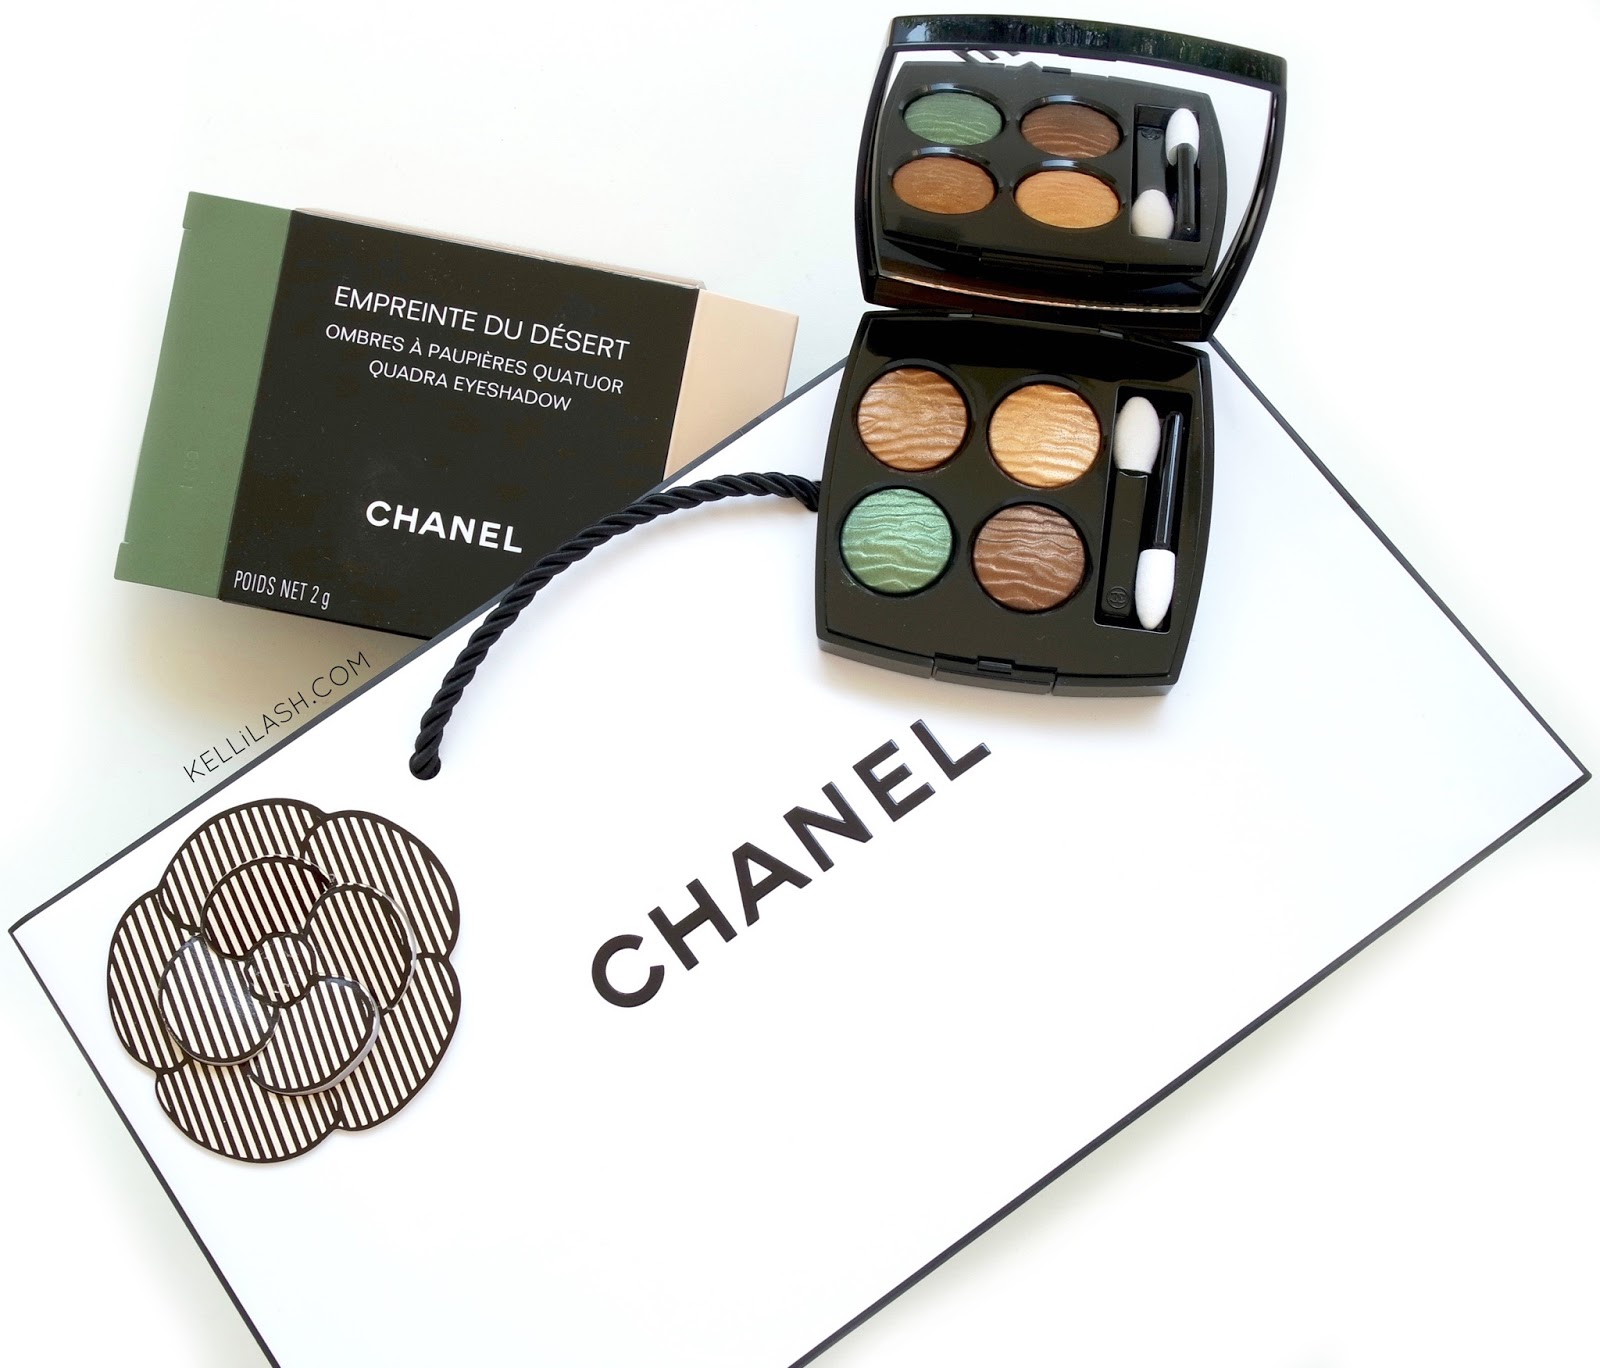 Chanel Empreinte du Desert Summer 2016 Eyeshadow Quad Review